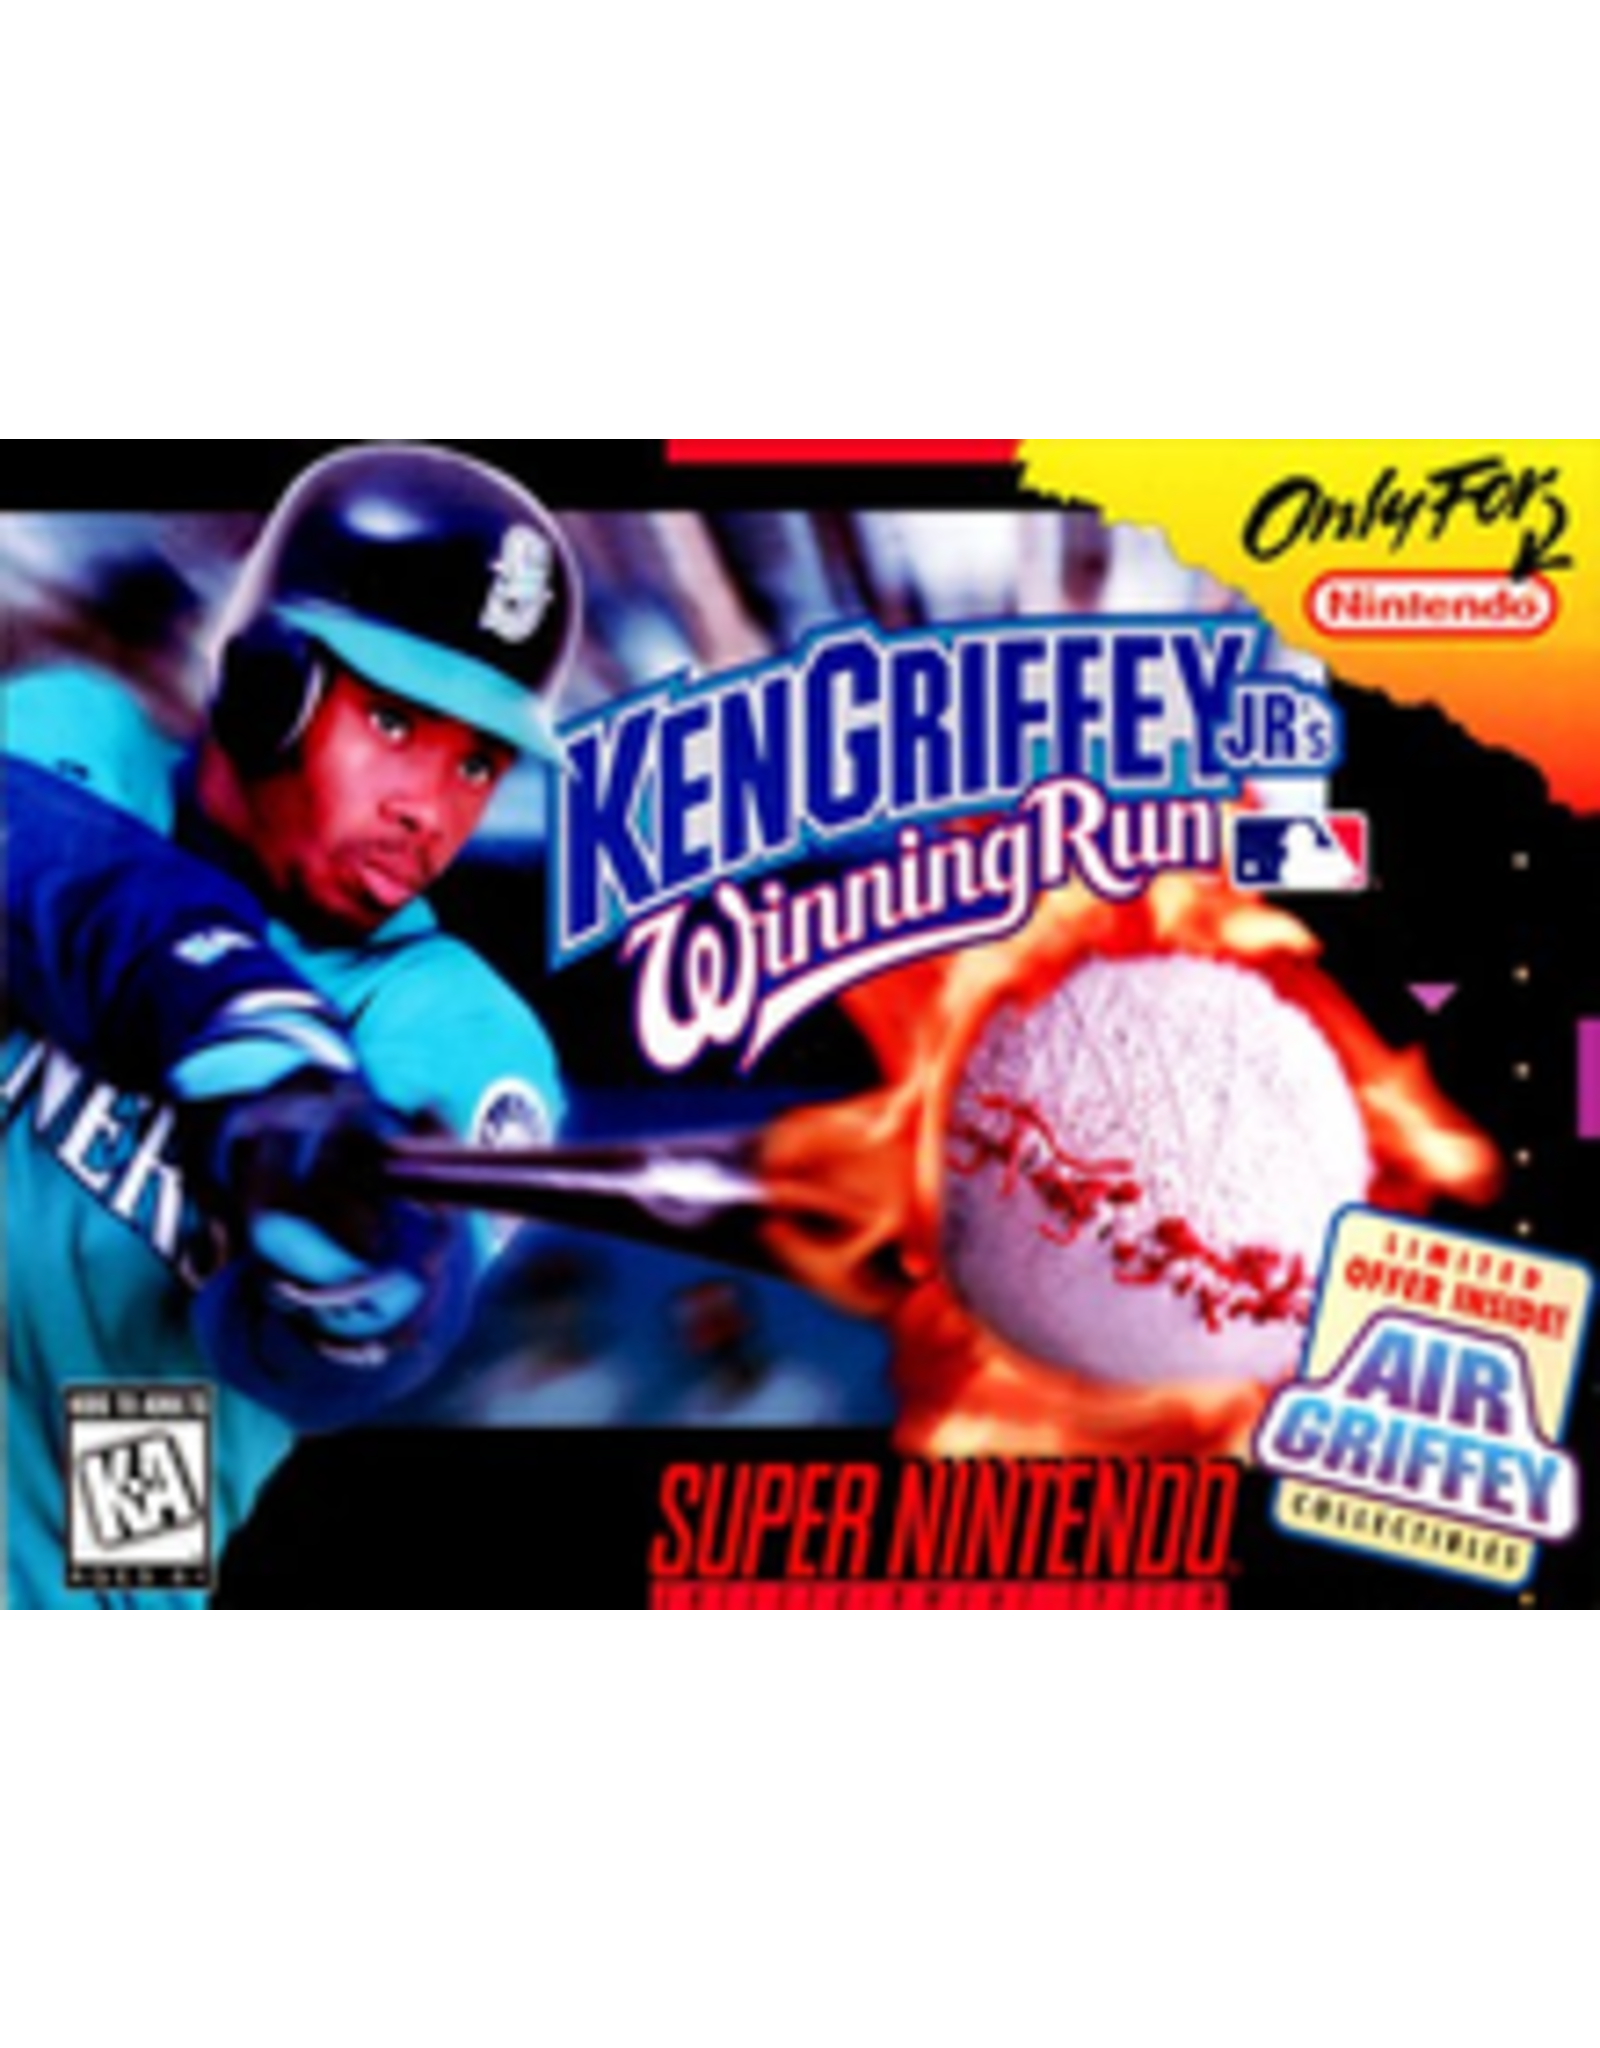 Super Nintendo Ken Griffey Jr's Winning Run (Cart Only)